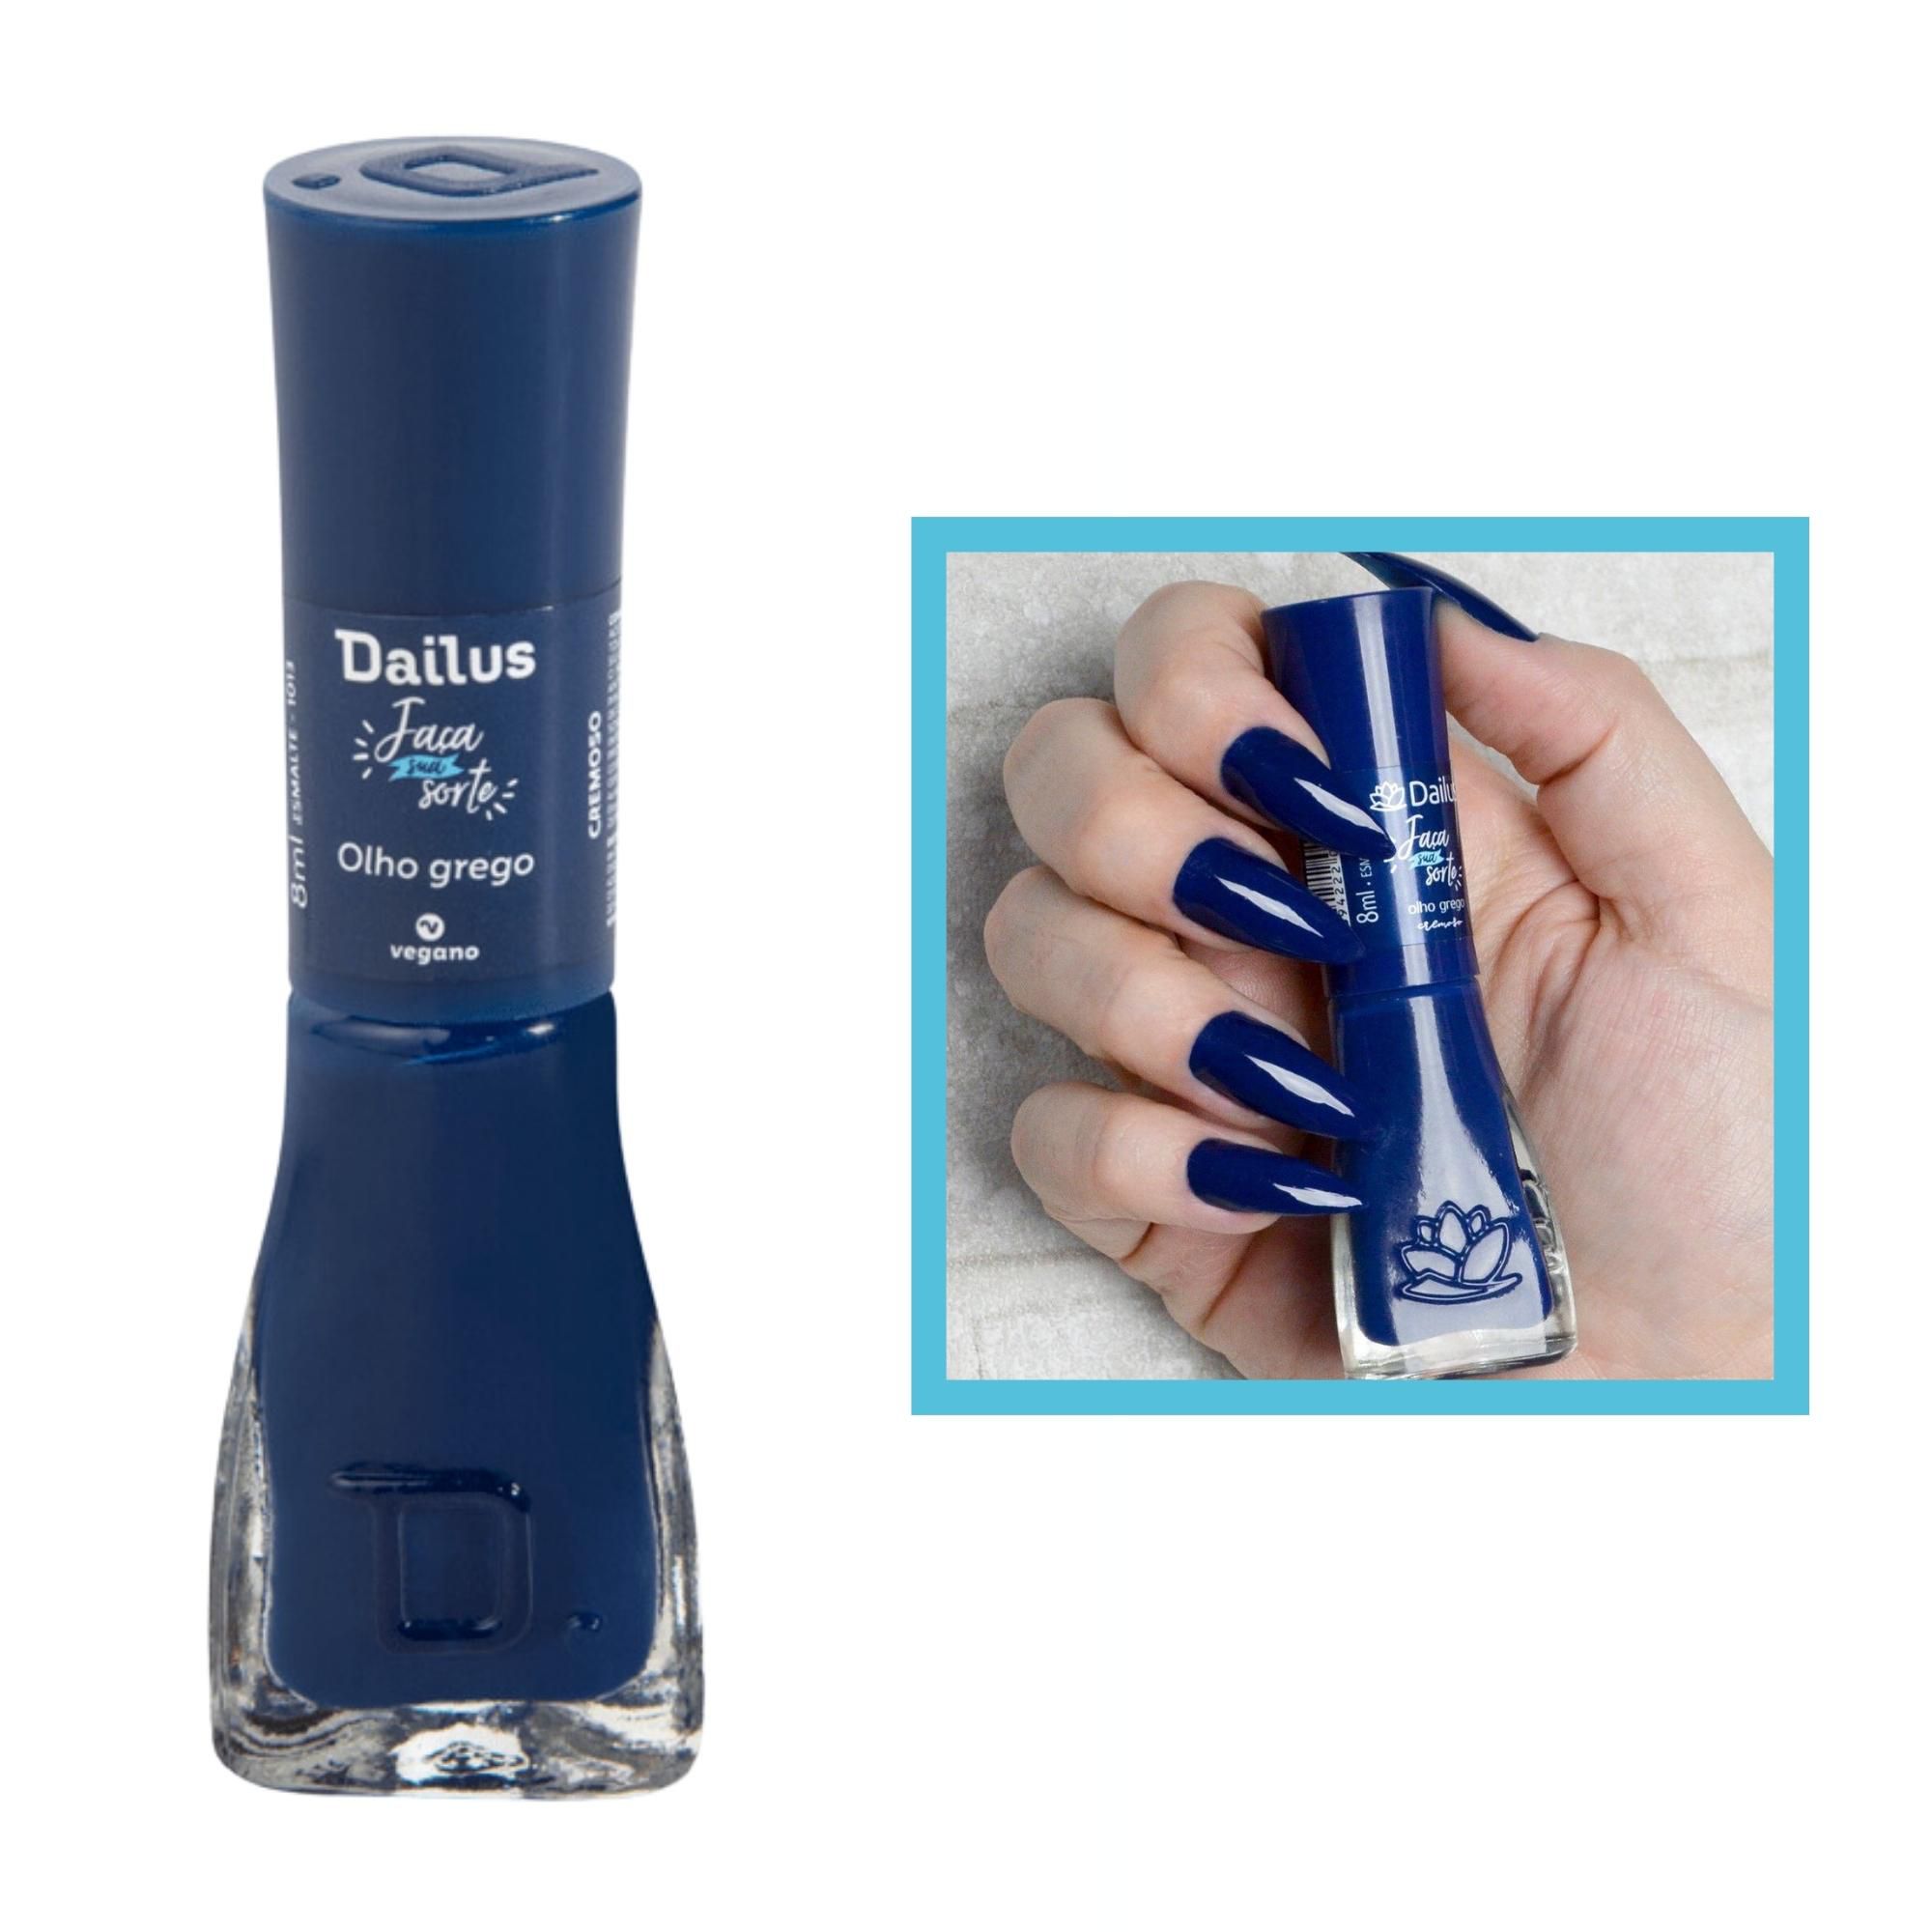 Perfumaria Ganesh - Esmalte azul lindooo, Podes Crer da coleção Tie-Dailus  😍💅🏻💙 Estamos com a loja aberta das 12:00 as 16:00 horas de segunda a  sábado. E nosso delivery continua!! 👏🛵 Maiores